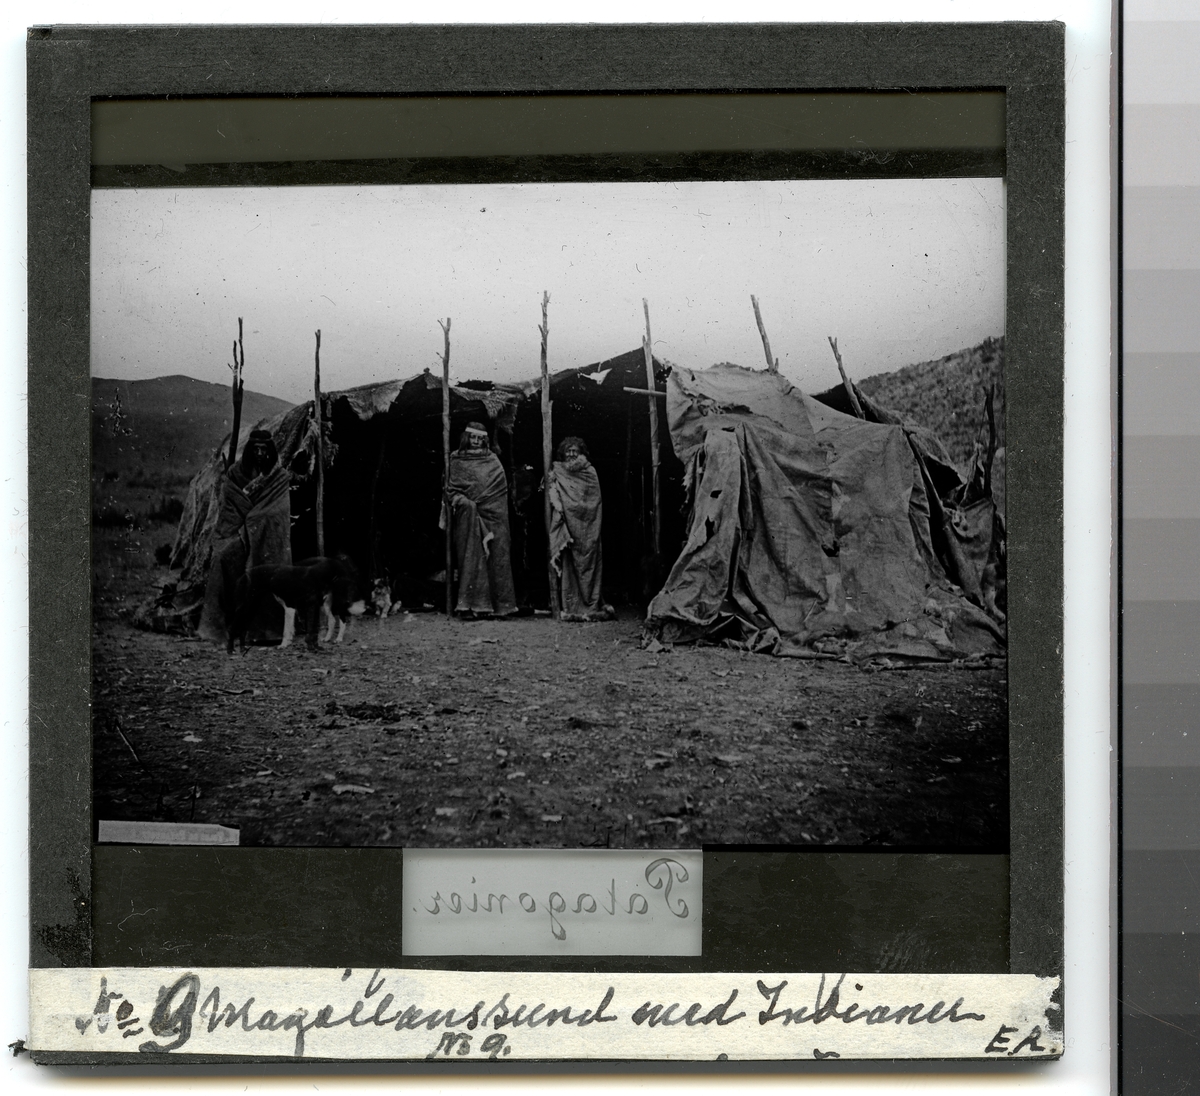 Bilden visar tre urinvånare från Patagonien som har tagit uppställning framför sin tält, en toldo, för fotografering.